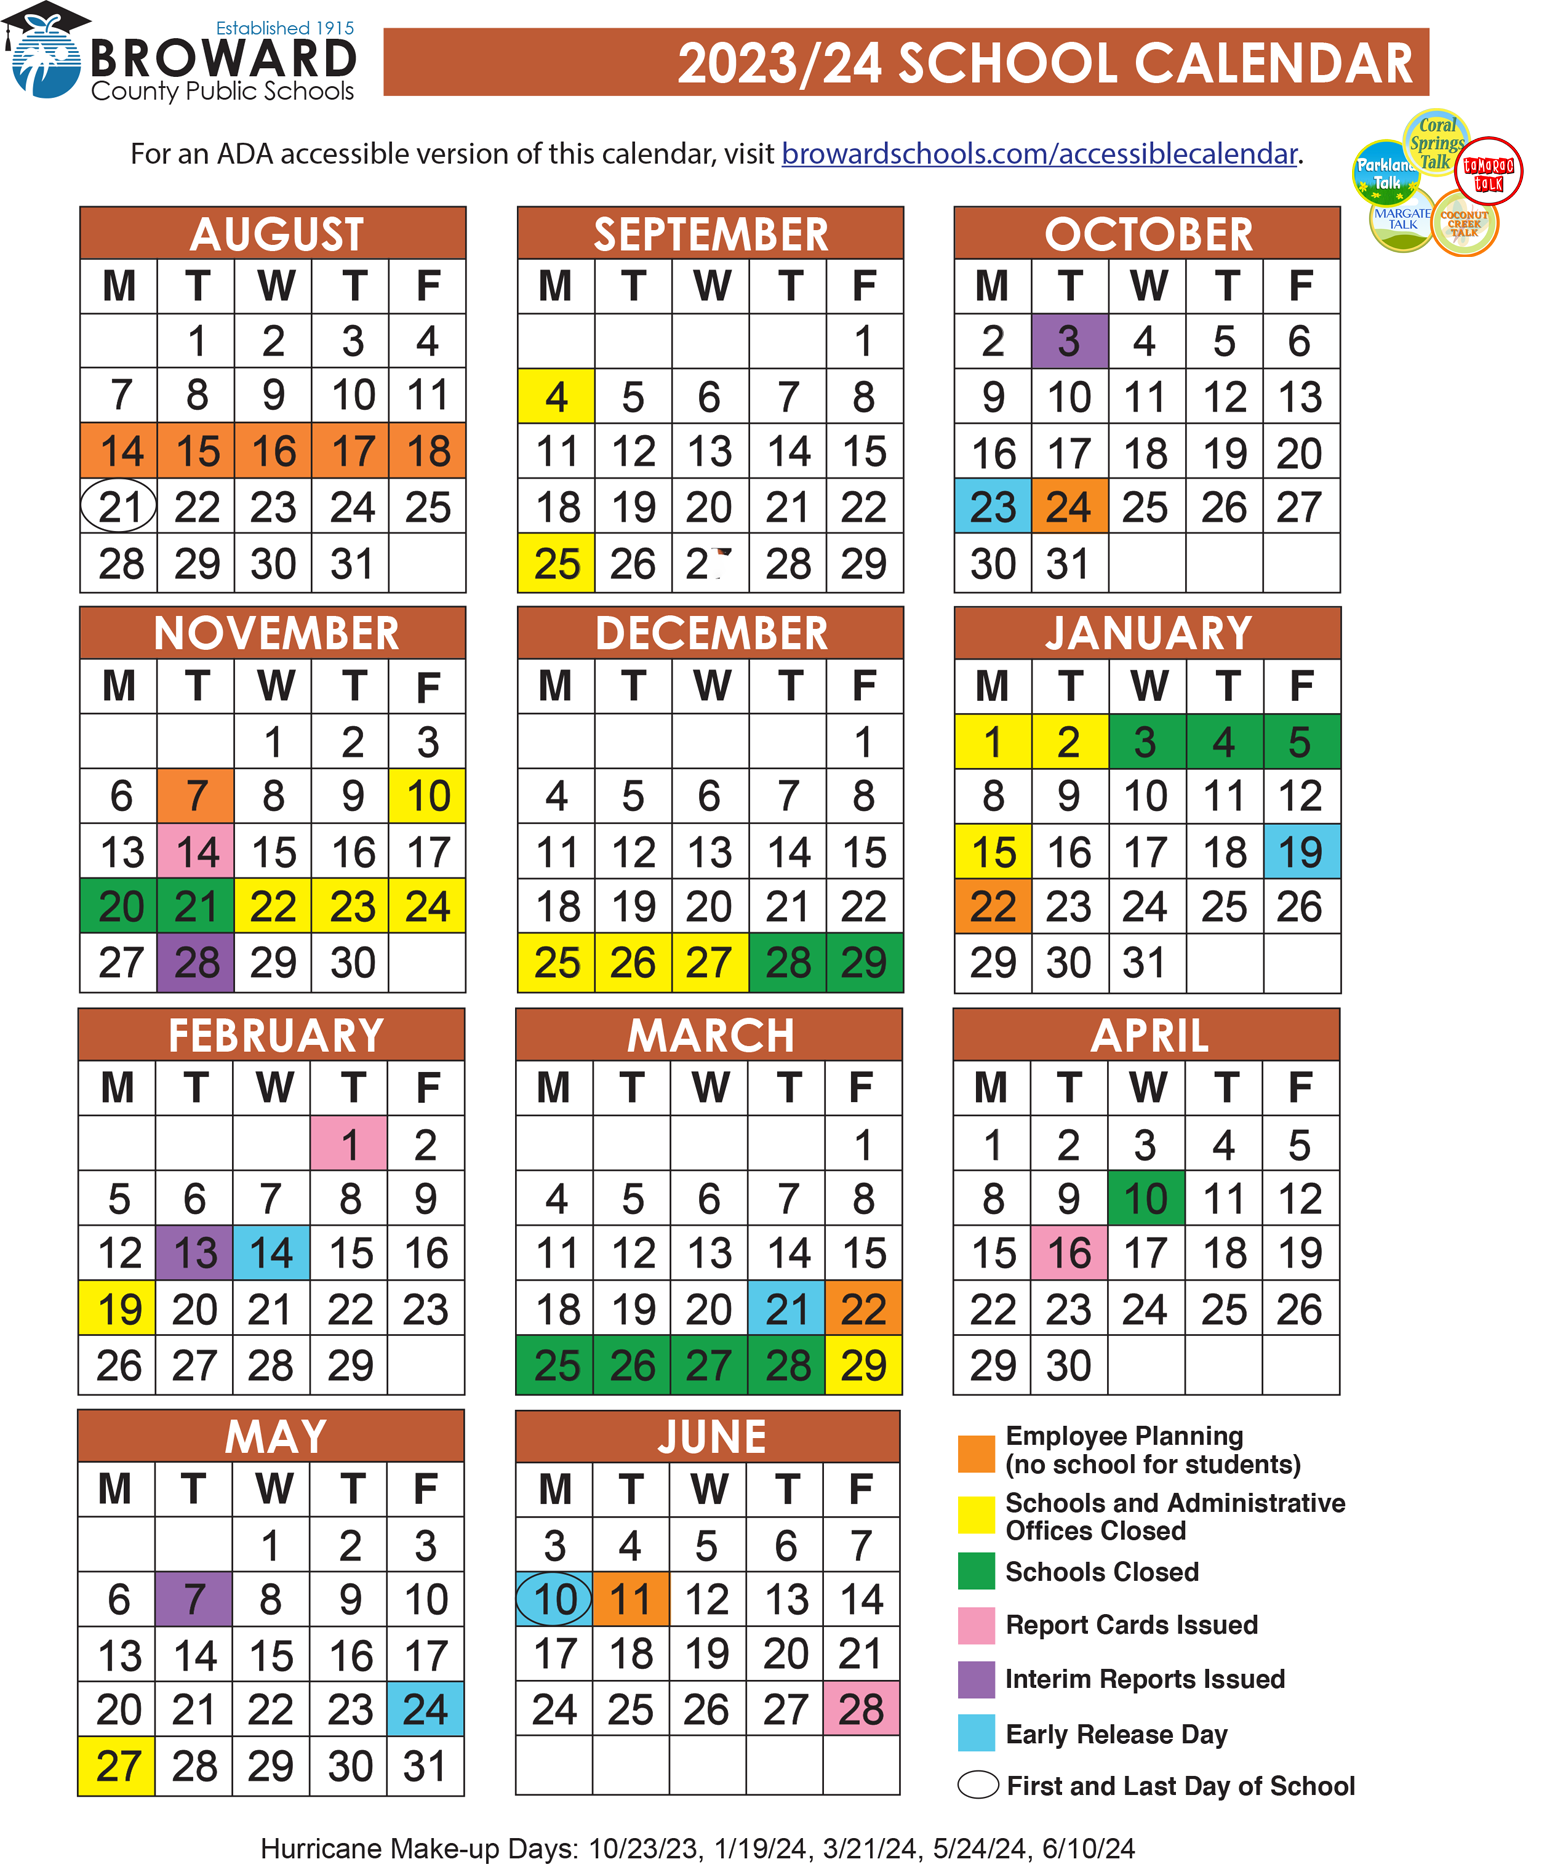 Official 2023/24 Broward County Public Schools Color Calendar